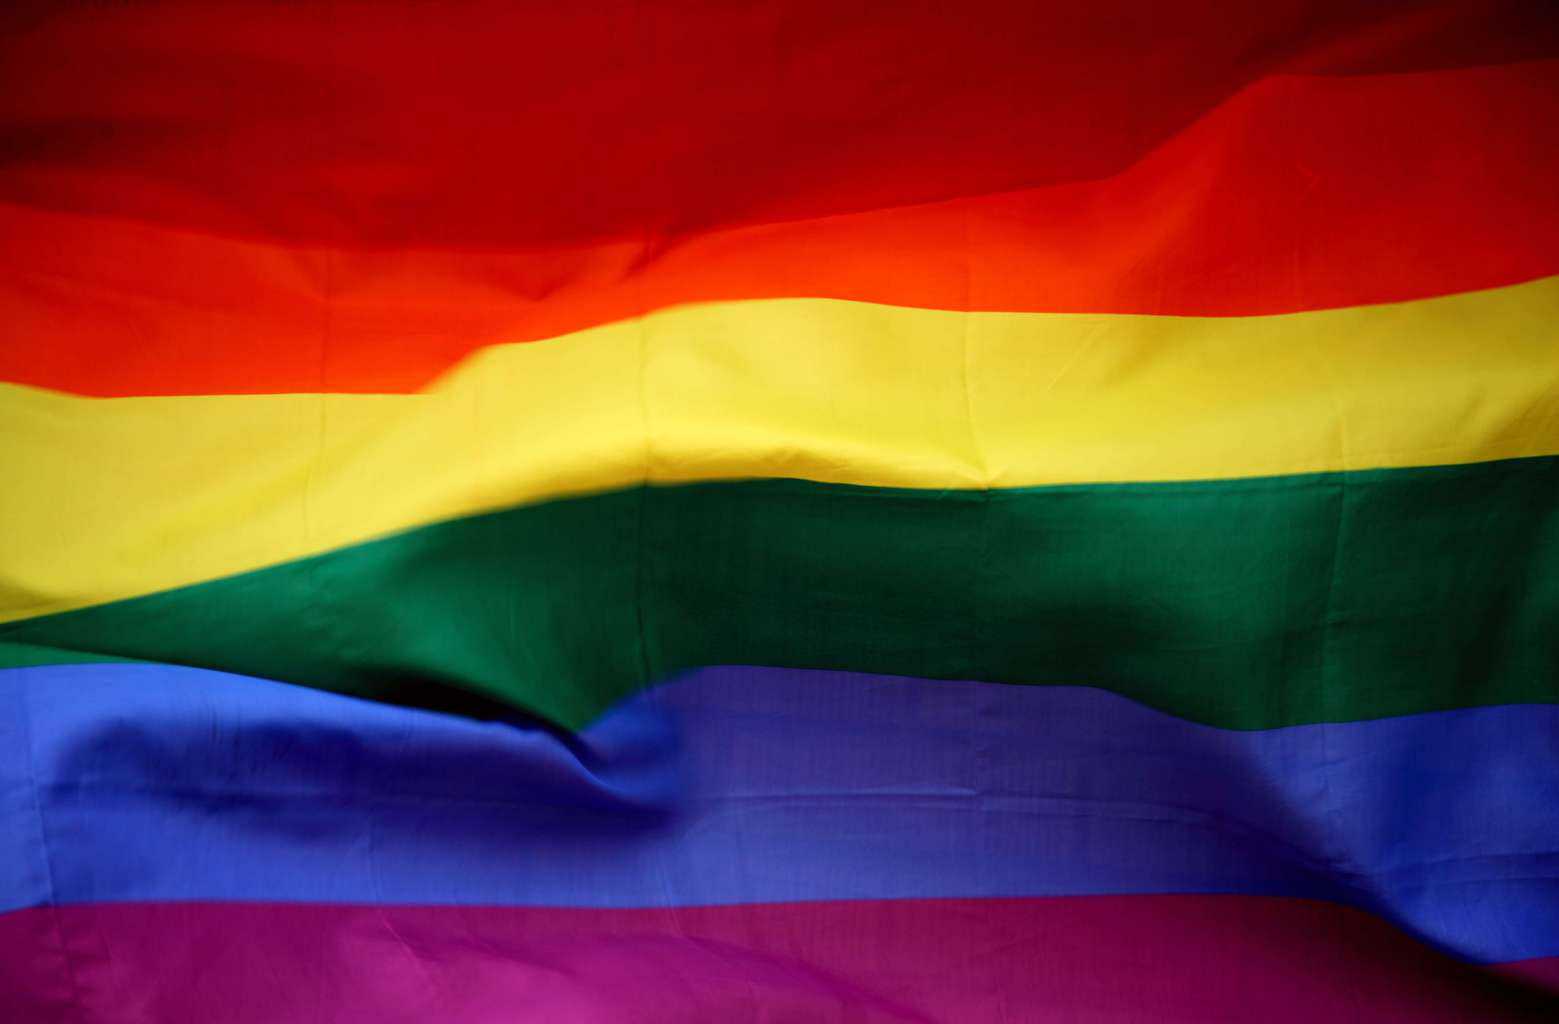 Parada do Orgulho LGBT